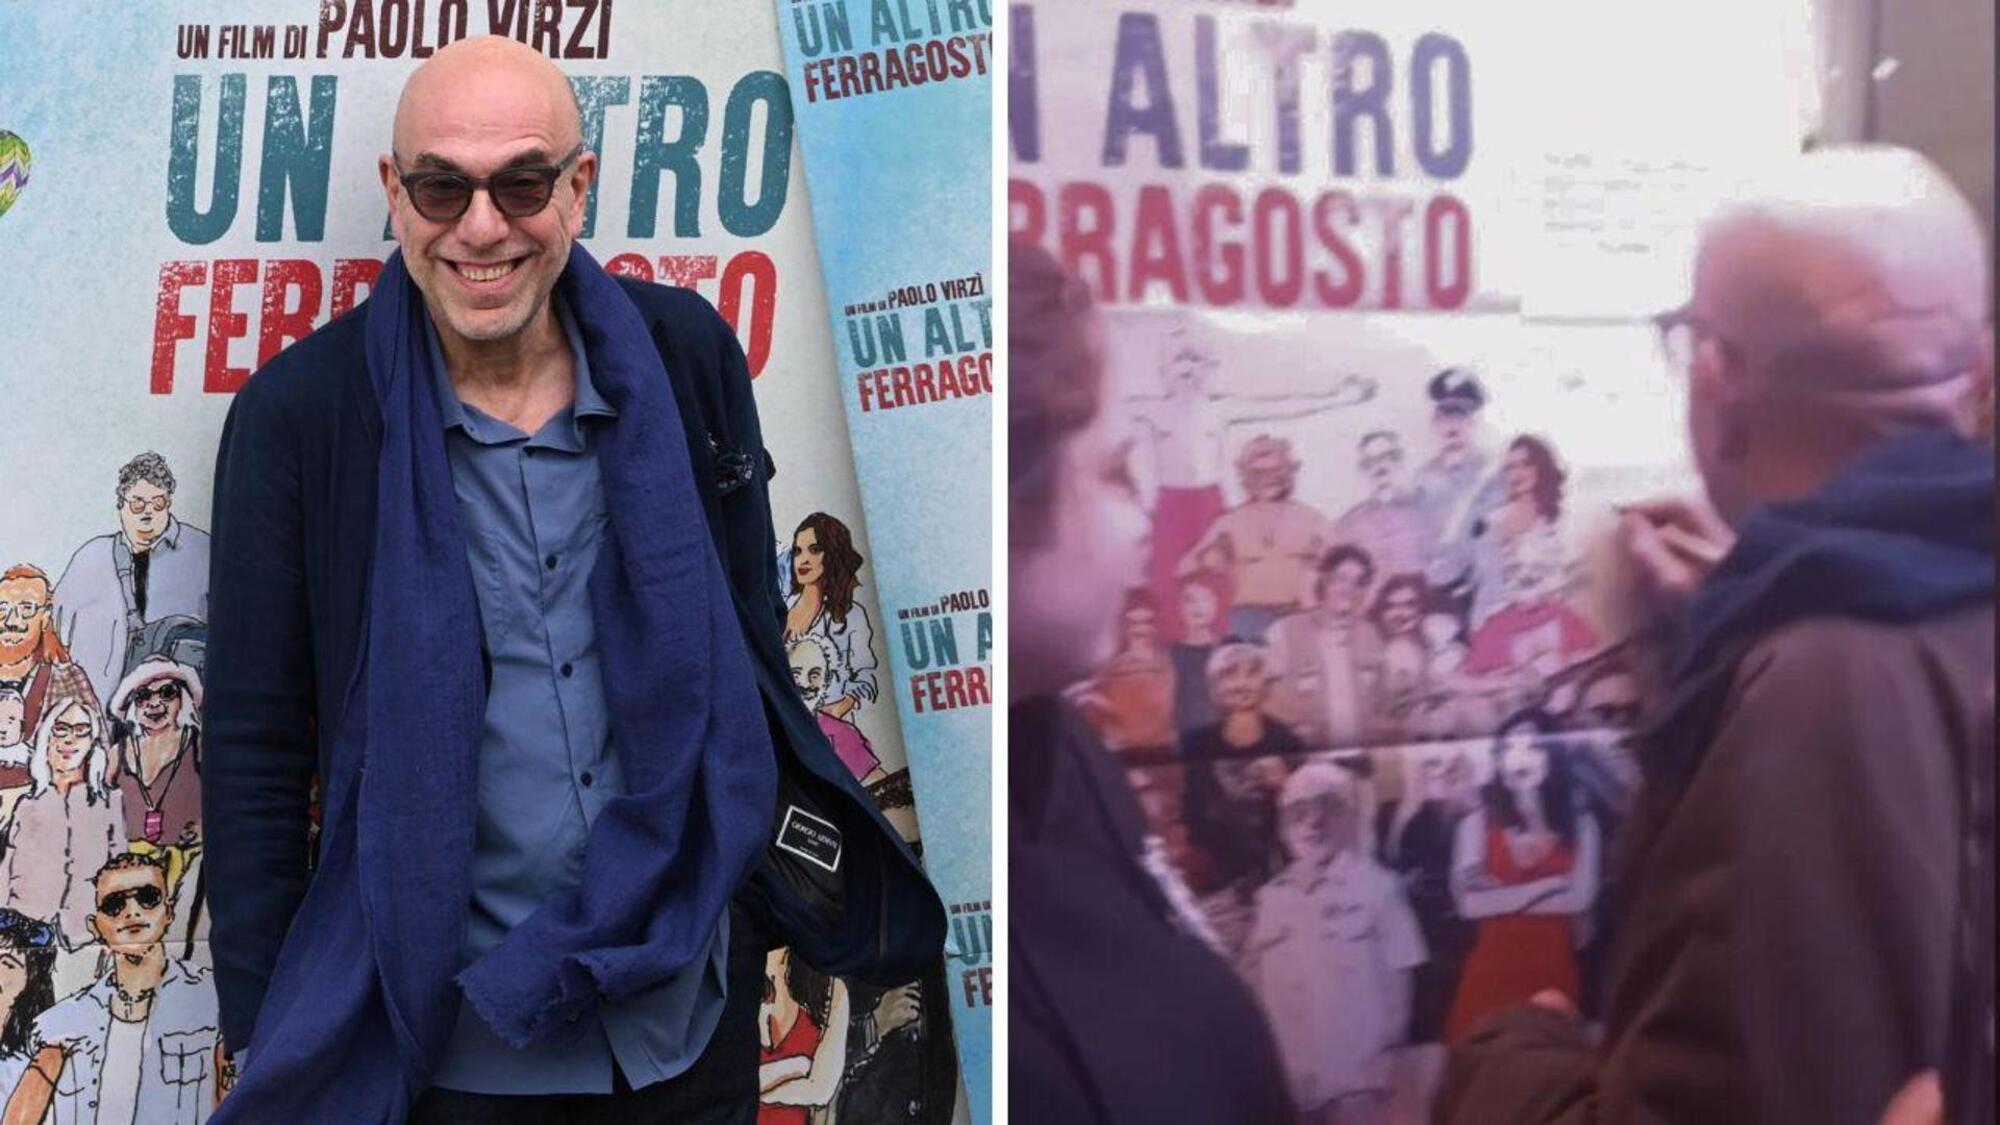 Paolo Virz&igrave; protesta al cinema Ambrosio di Torino per la qualit&agrave; della proiezione